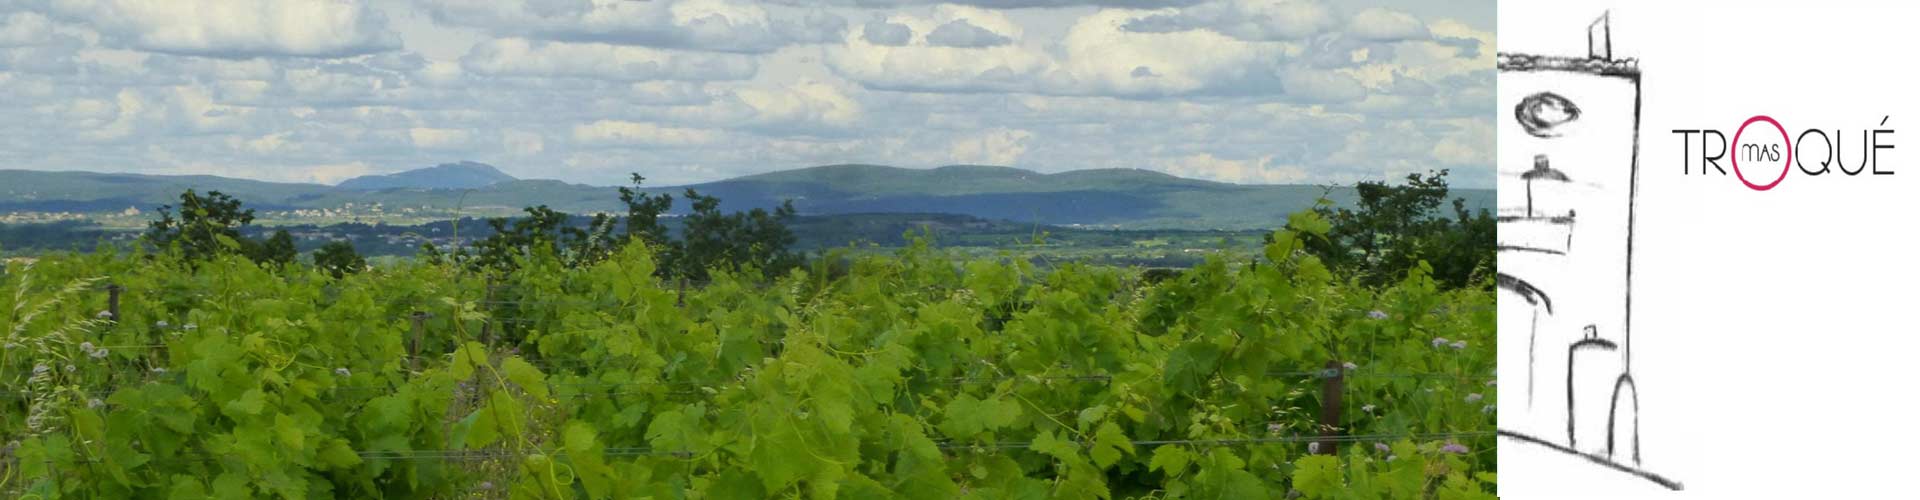 Mas Troqué, Vin bio à Aspiran dans l'Hérault